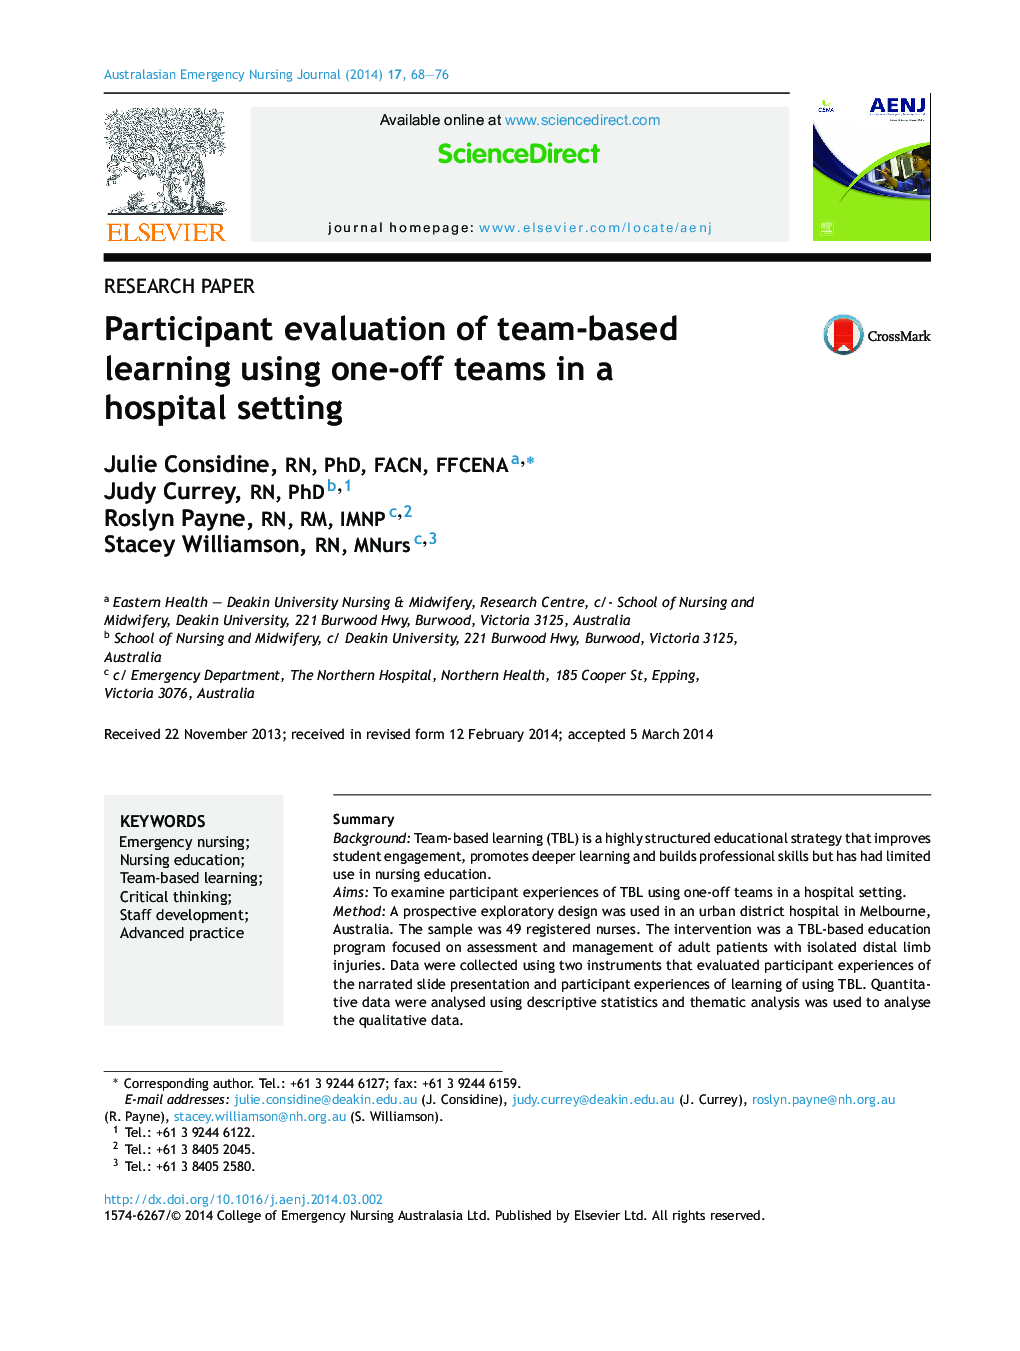 ارزیابی شرکت کننده از یادگیری تیمی با استفاده از تیم های one-off در یک محیط بیمارستان